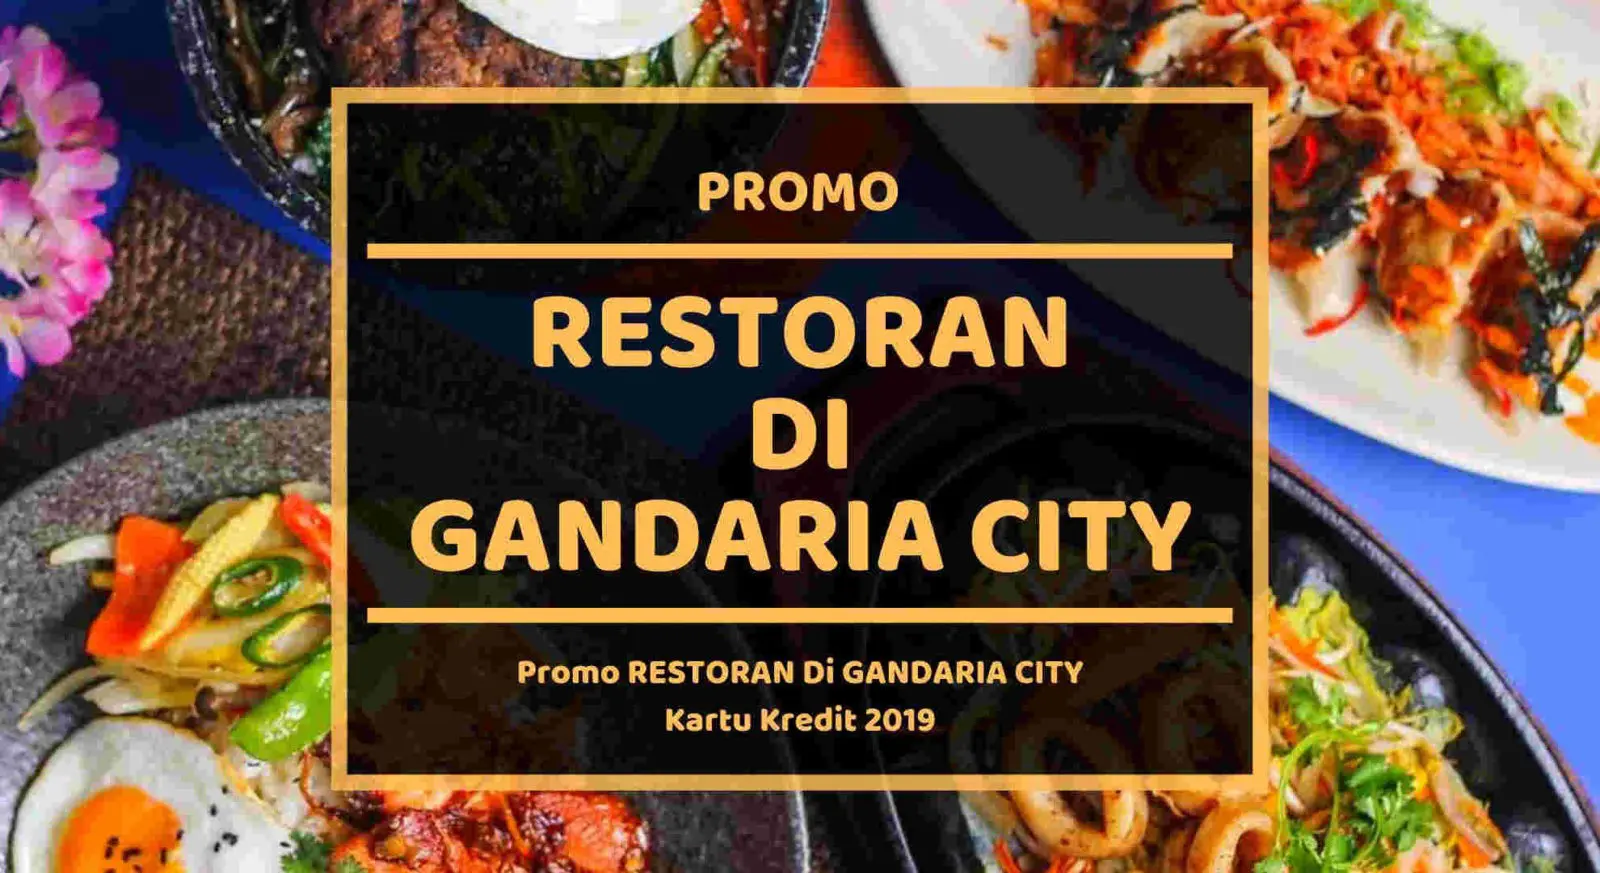 Promo Restoran di Gandaria City